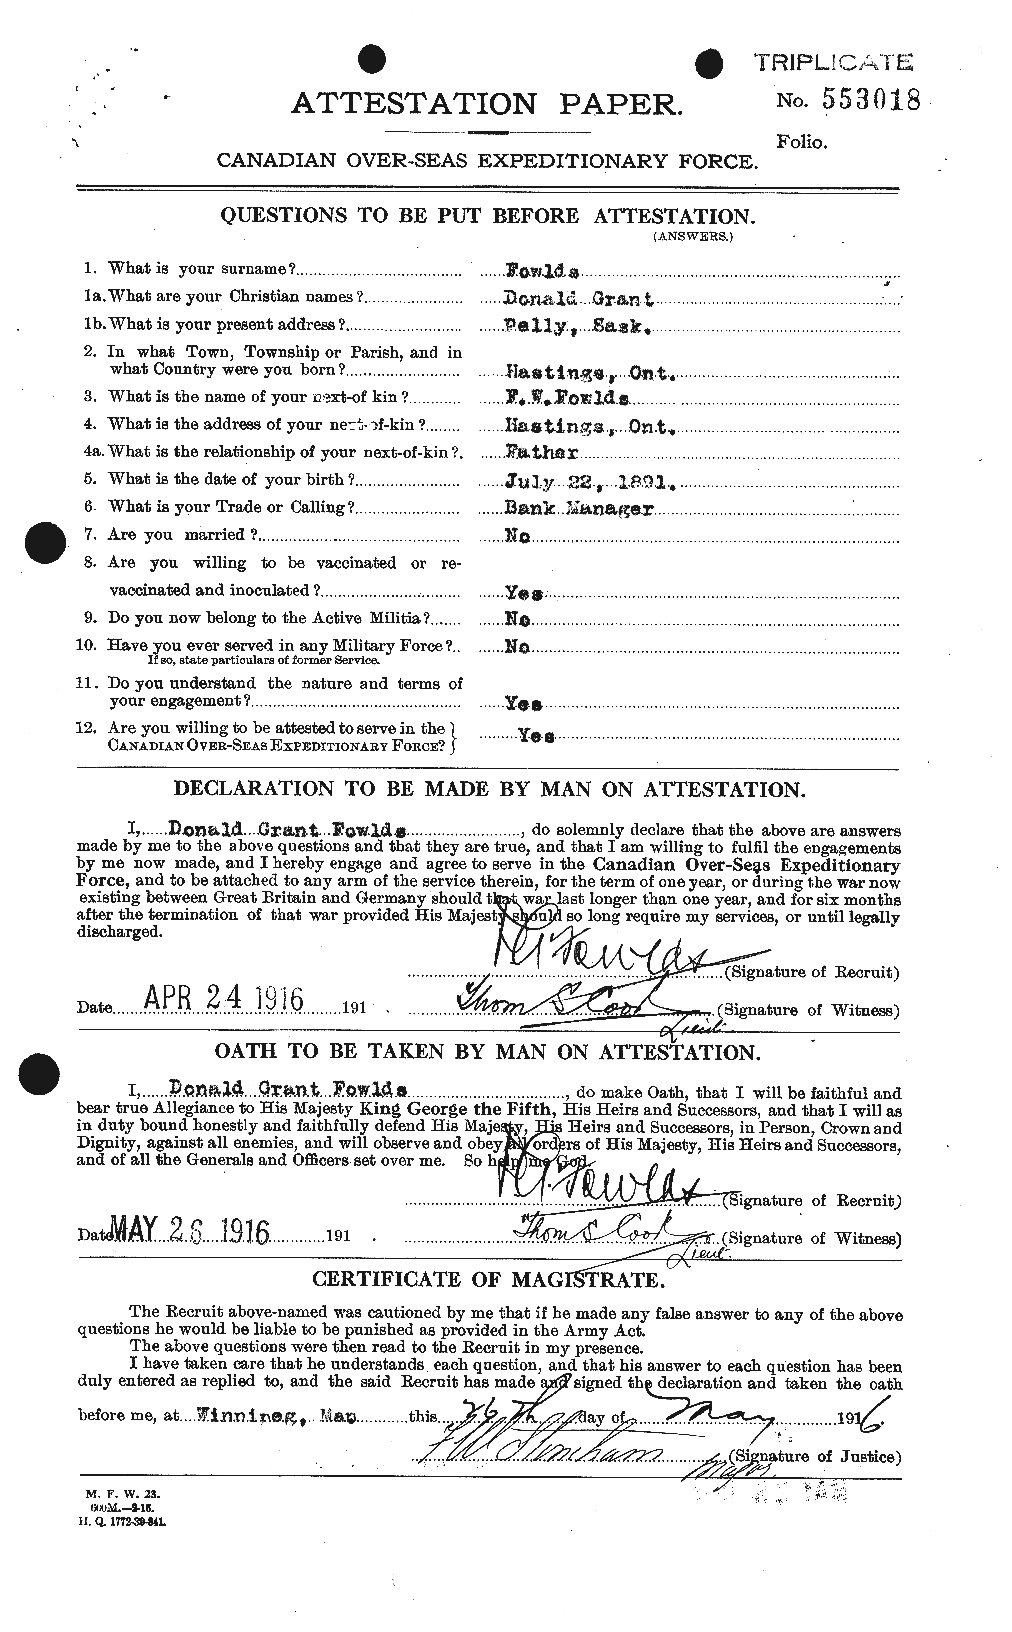 Dossiers du Personnel de la Première Guerre mondiale - CEC 332948a